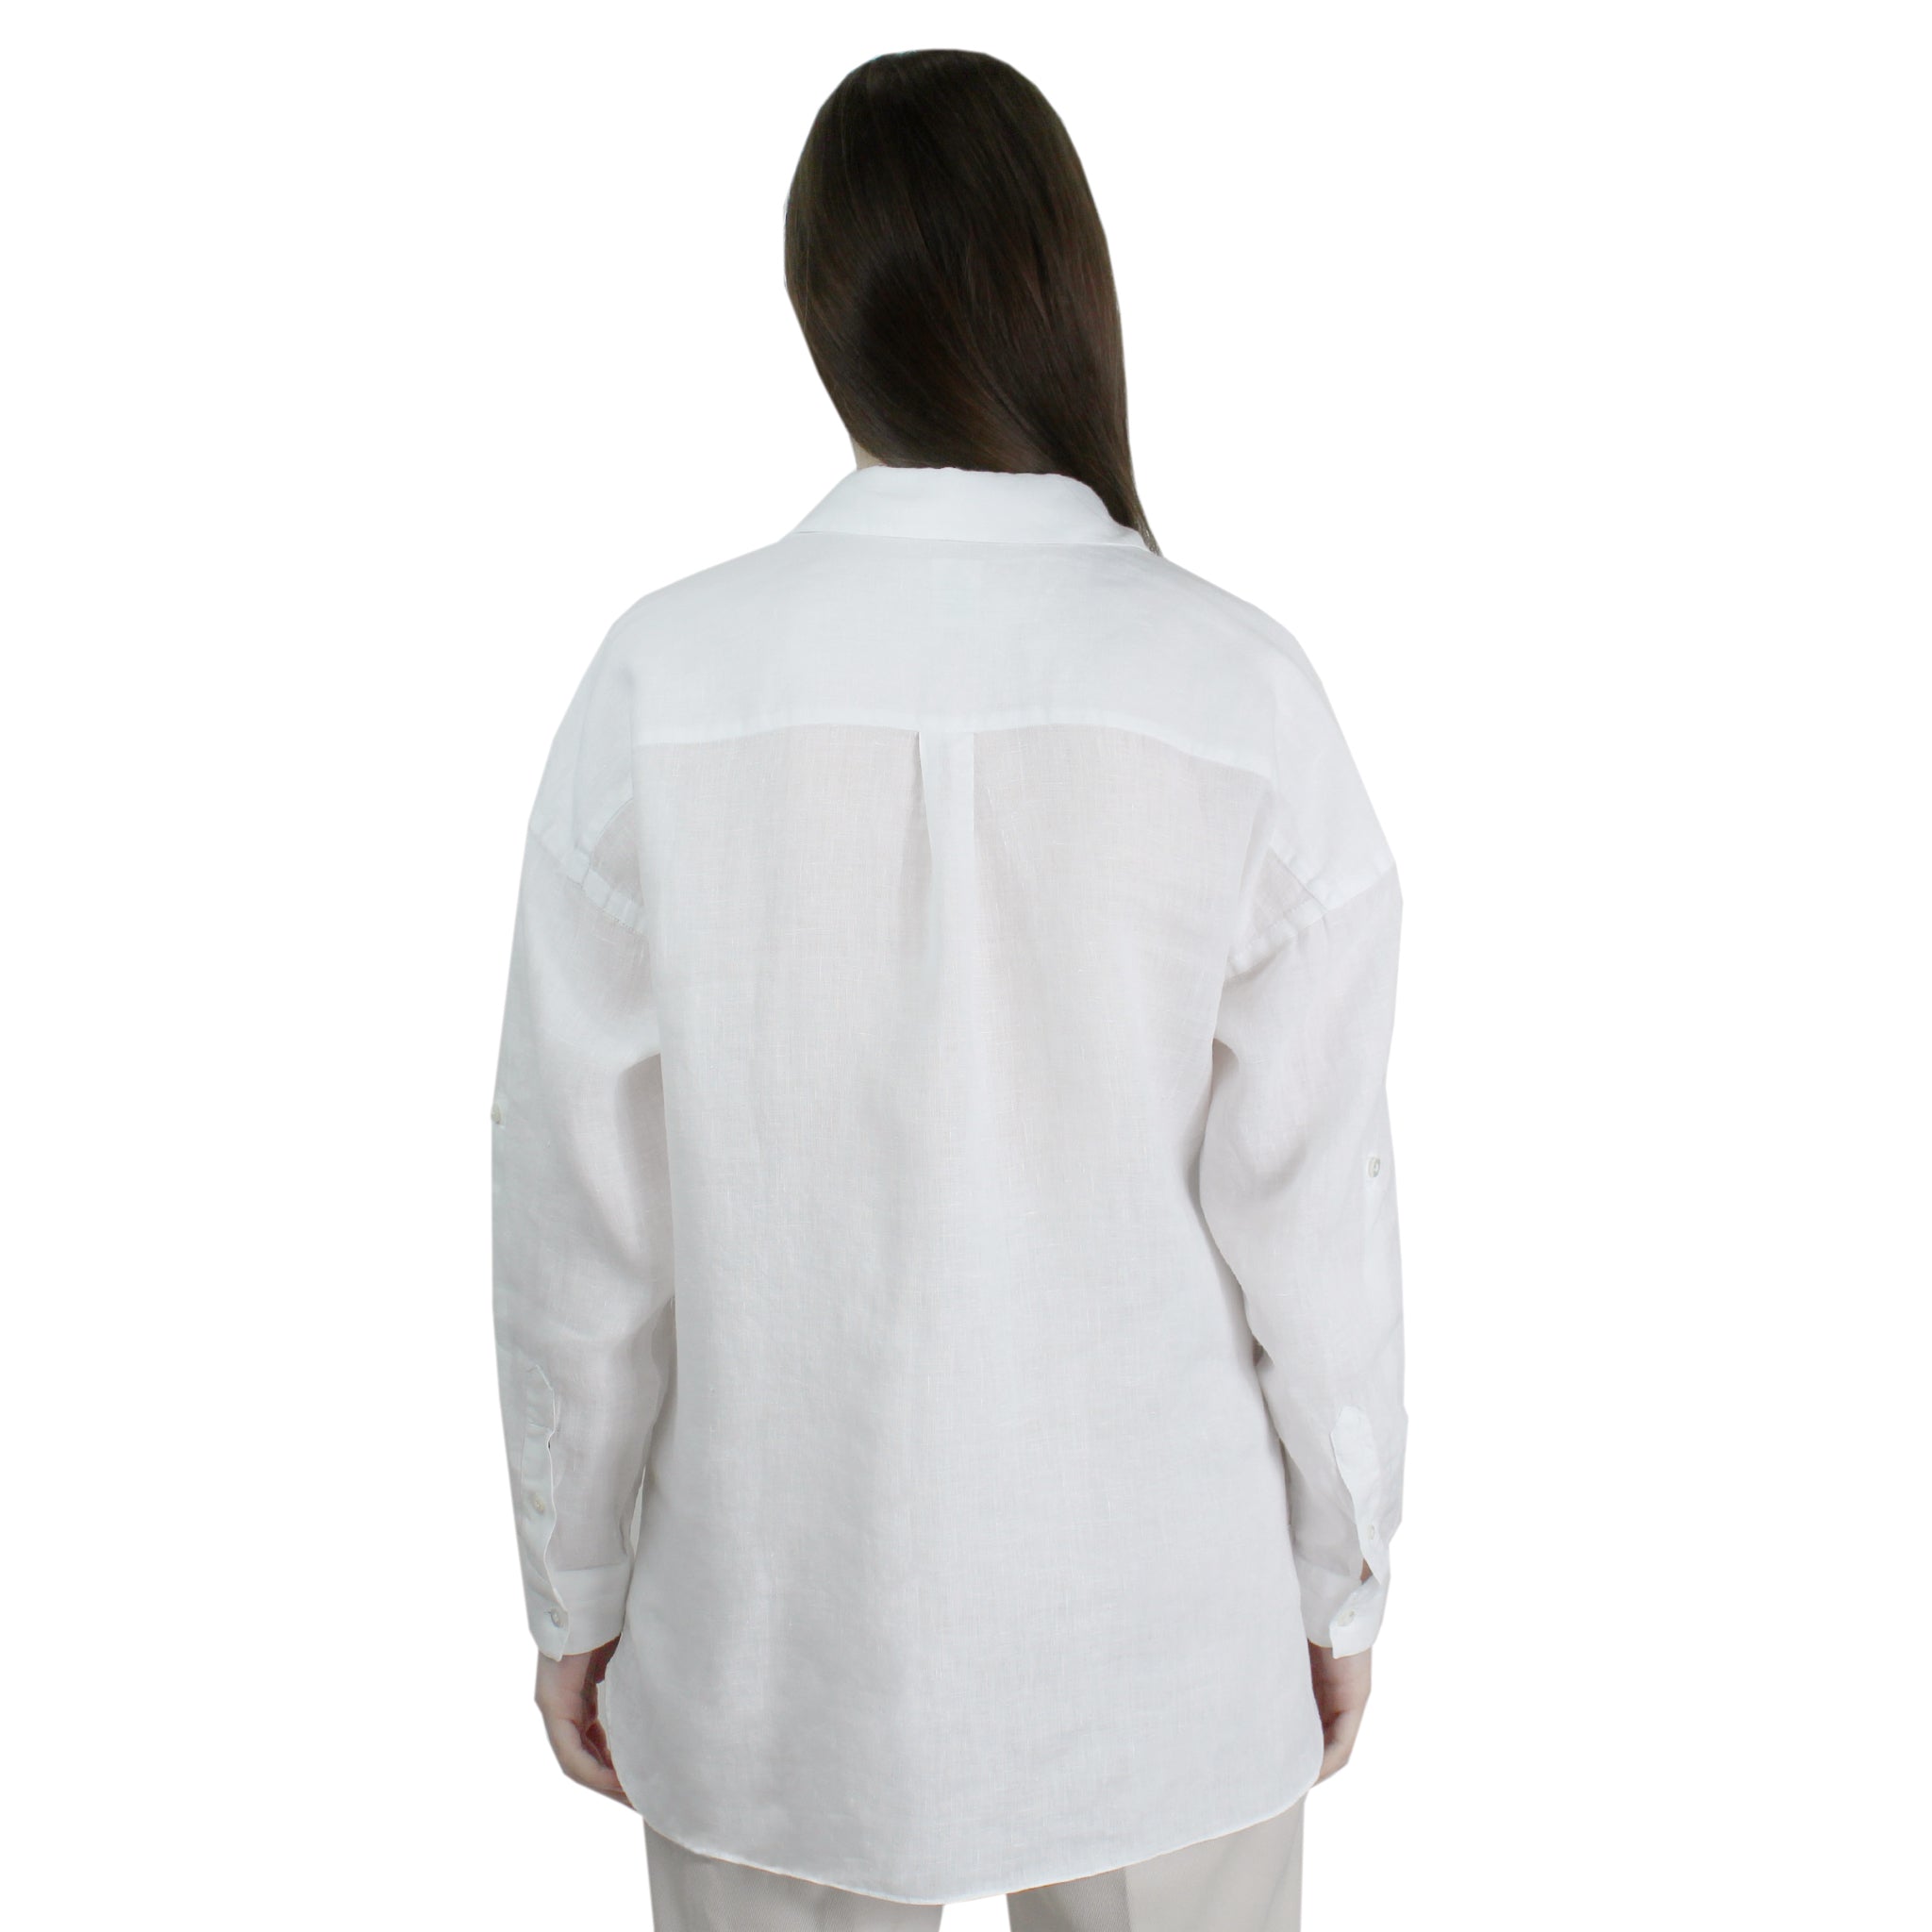 Camicia bianca in lino con tasche e fettuccia per regolare la manica